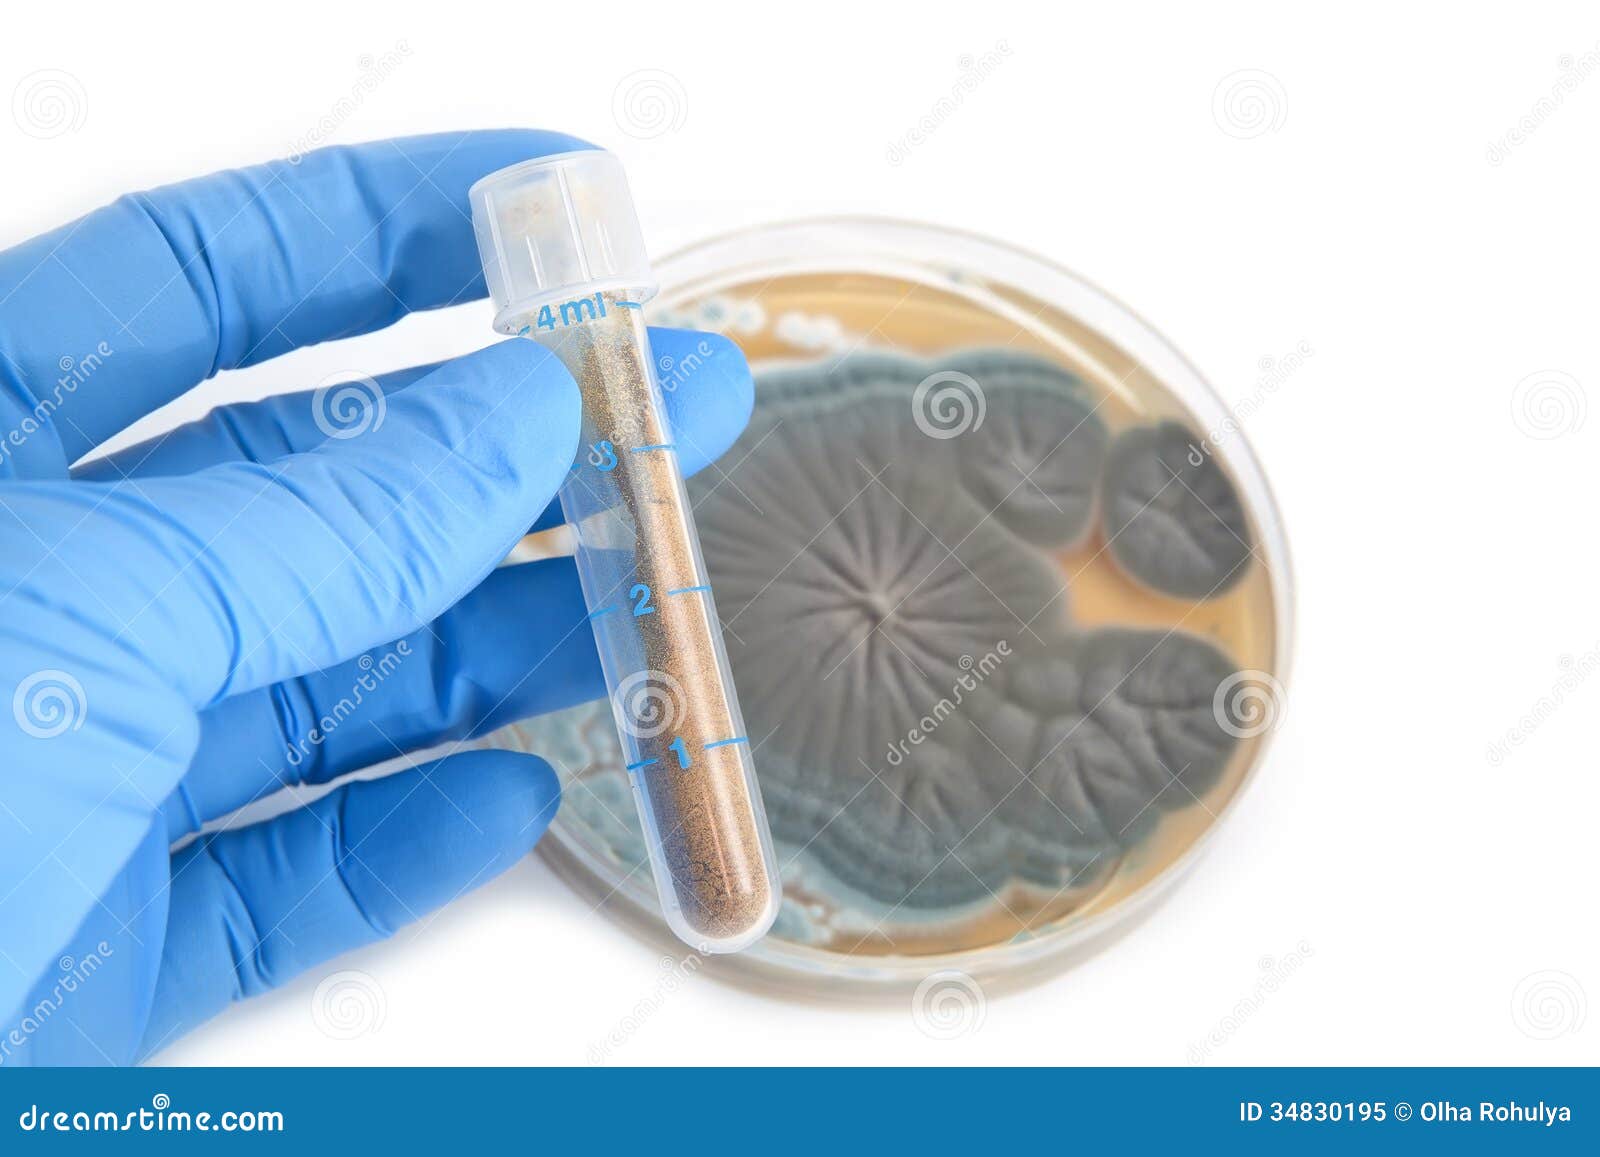 antibiotics in tube and penicillium fungi